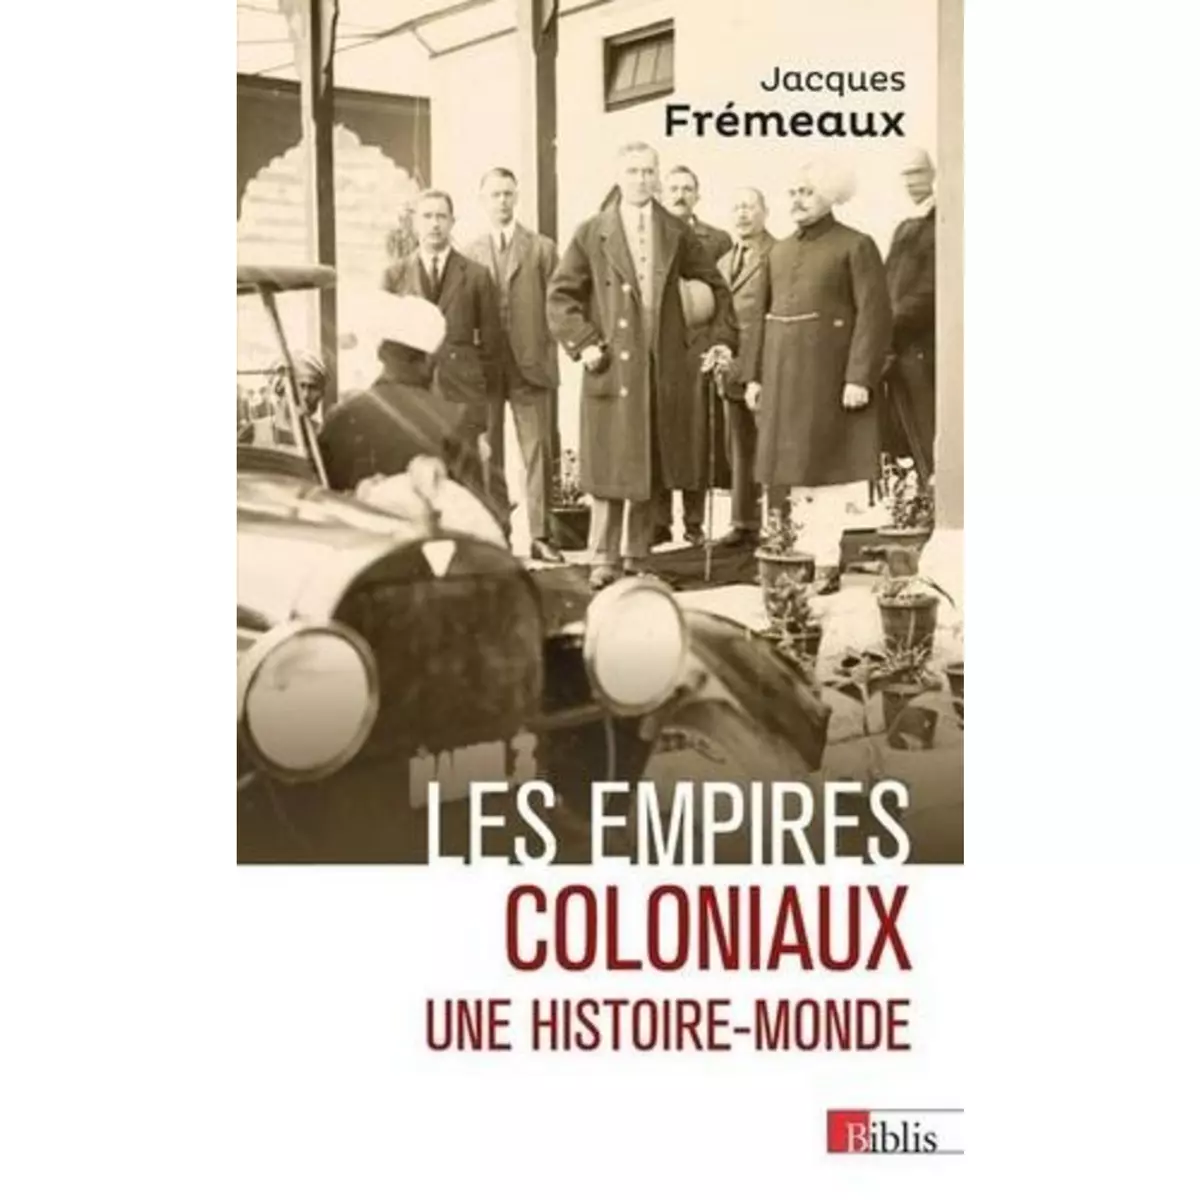  LES EMPIRES COLONIAUX. UNE HISTOIRE-MONDE, Frémeaux Jacques